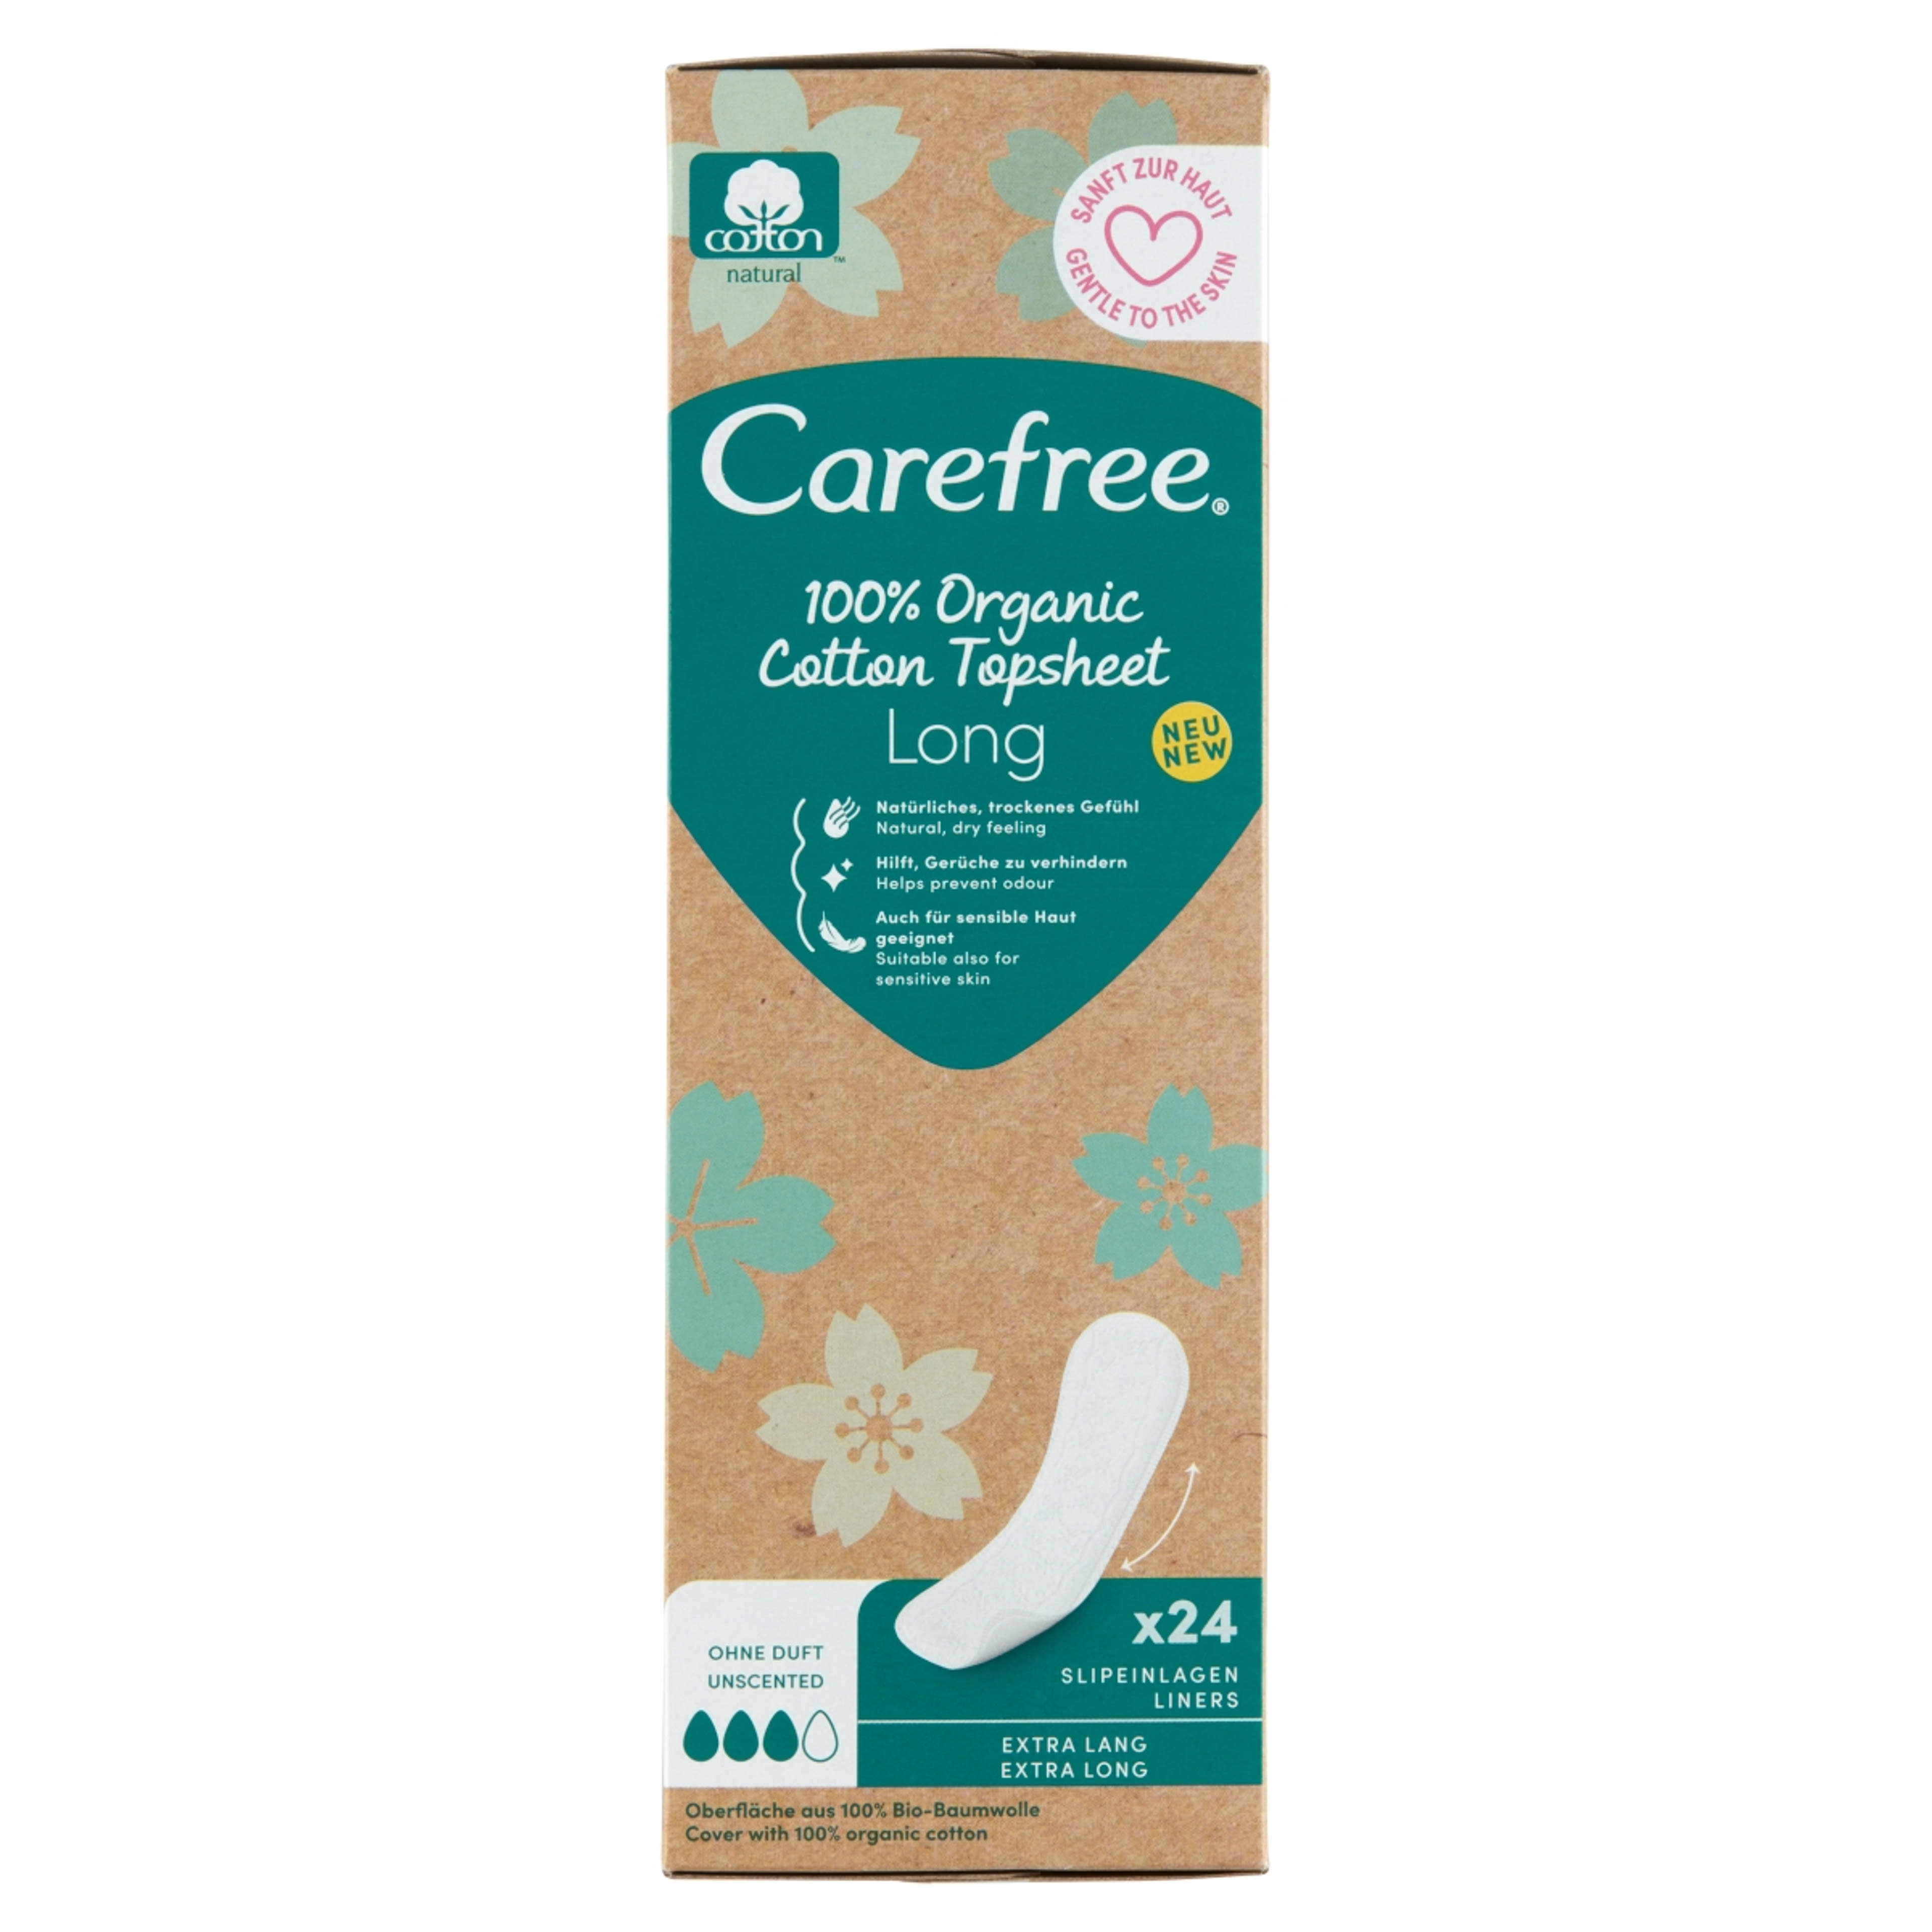 Carefree 100% Organic Cotton Topsheet Long tisztasági betét illatmentes - 24 db